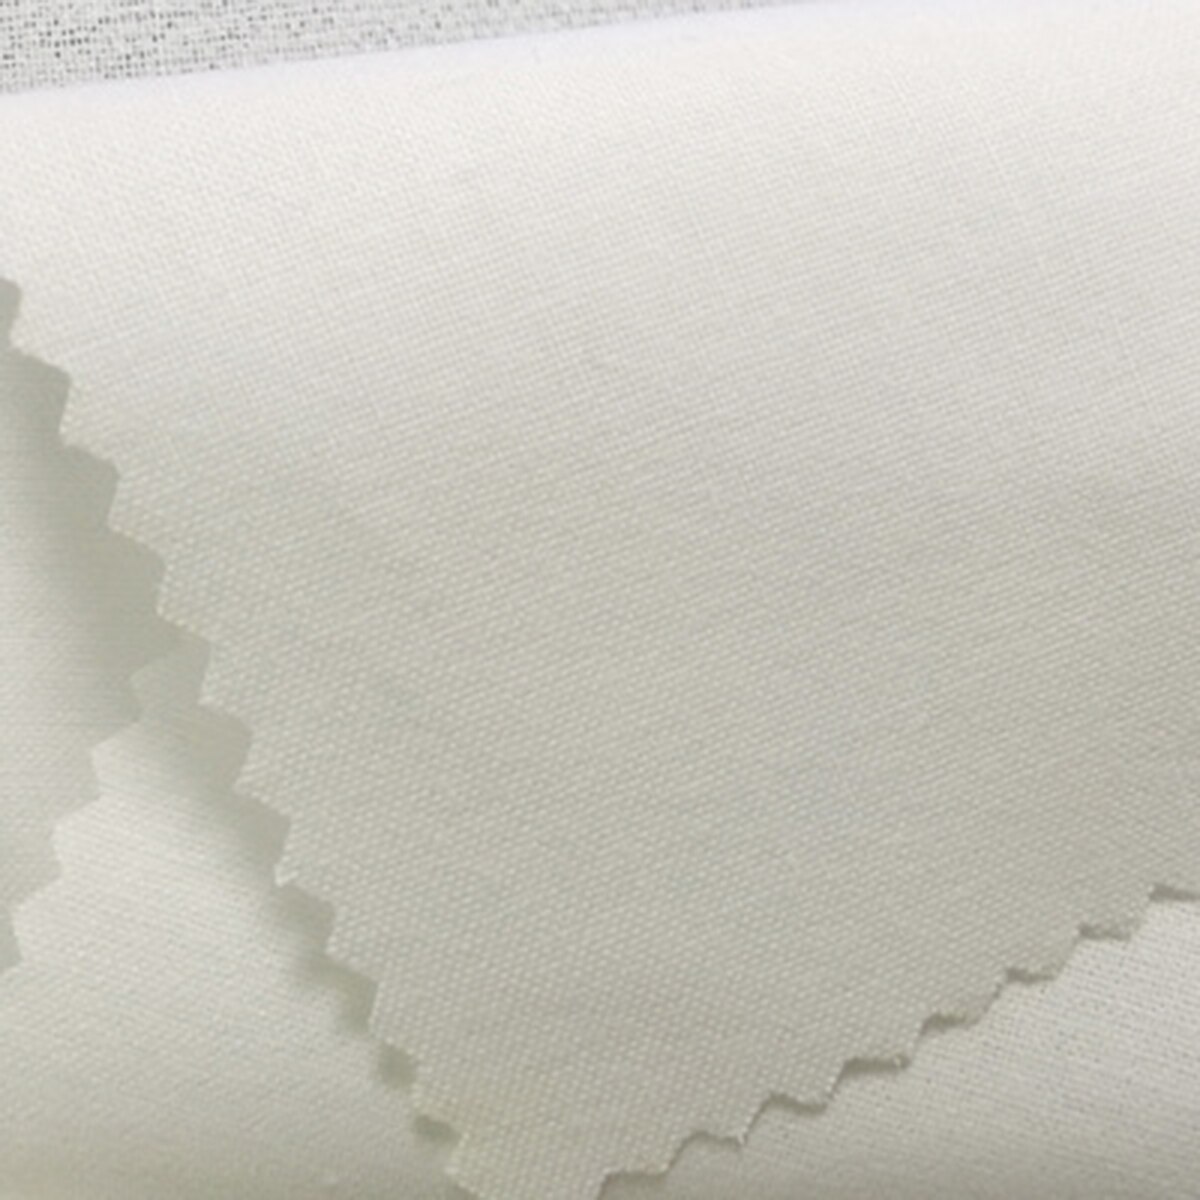 Polyesterstrik strikjern på grænseflade klæbende skjortekraveforing sort hvid diy håndværk quiltning patchwork